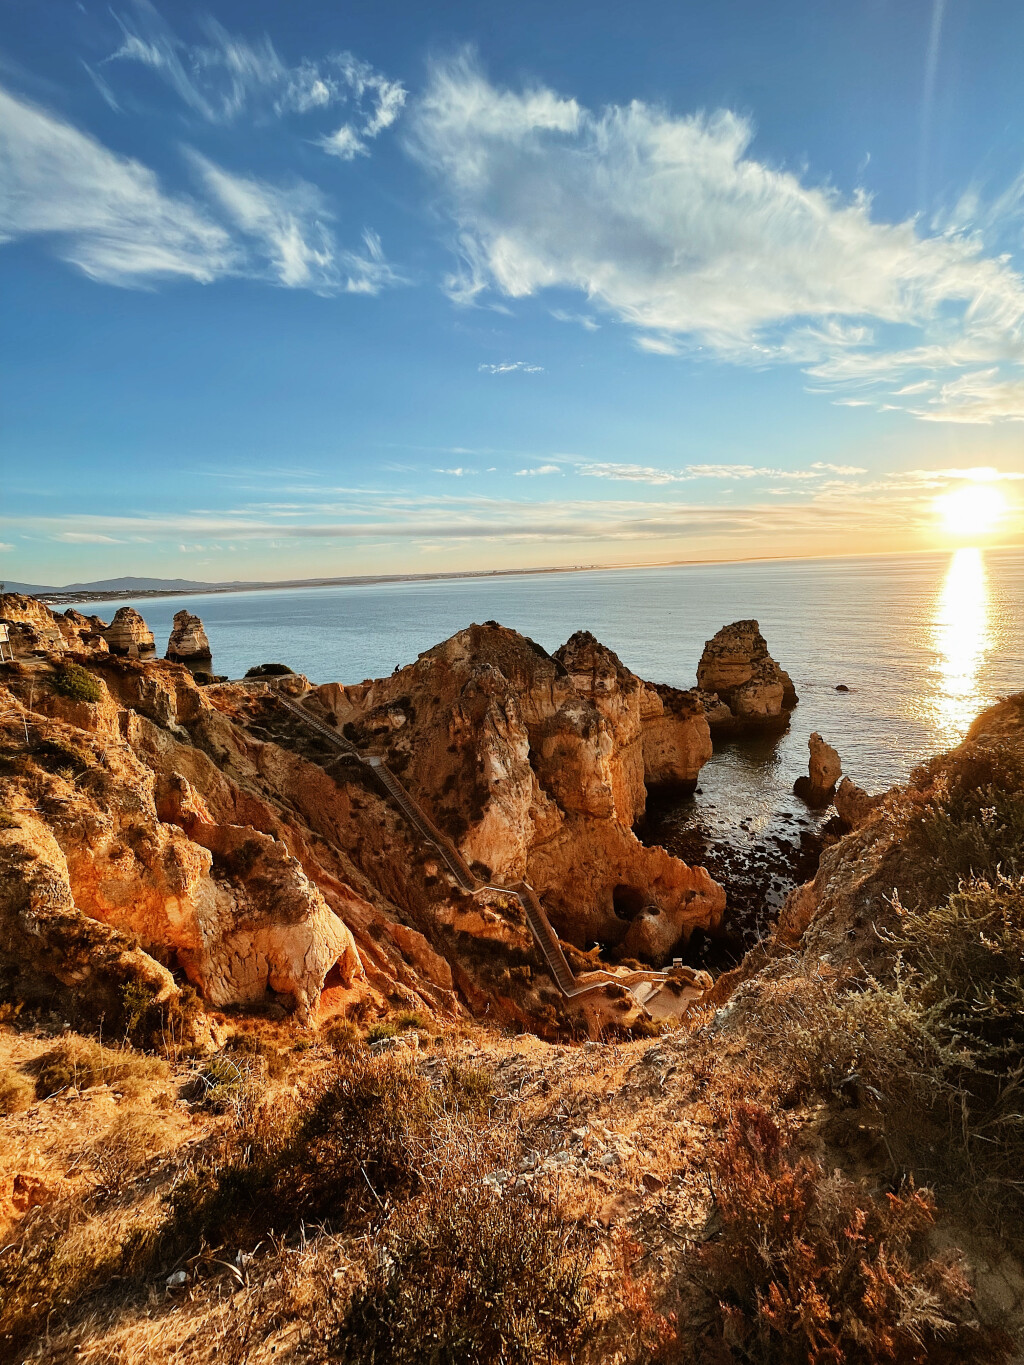 S obzirom da Algarve izlazi na ocean, ne treba se previše čuditi hladnoj temperaturi mora